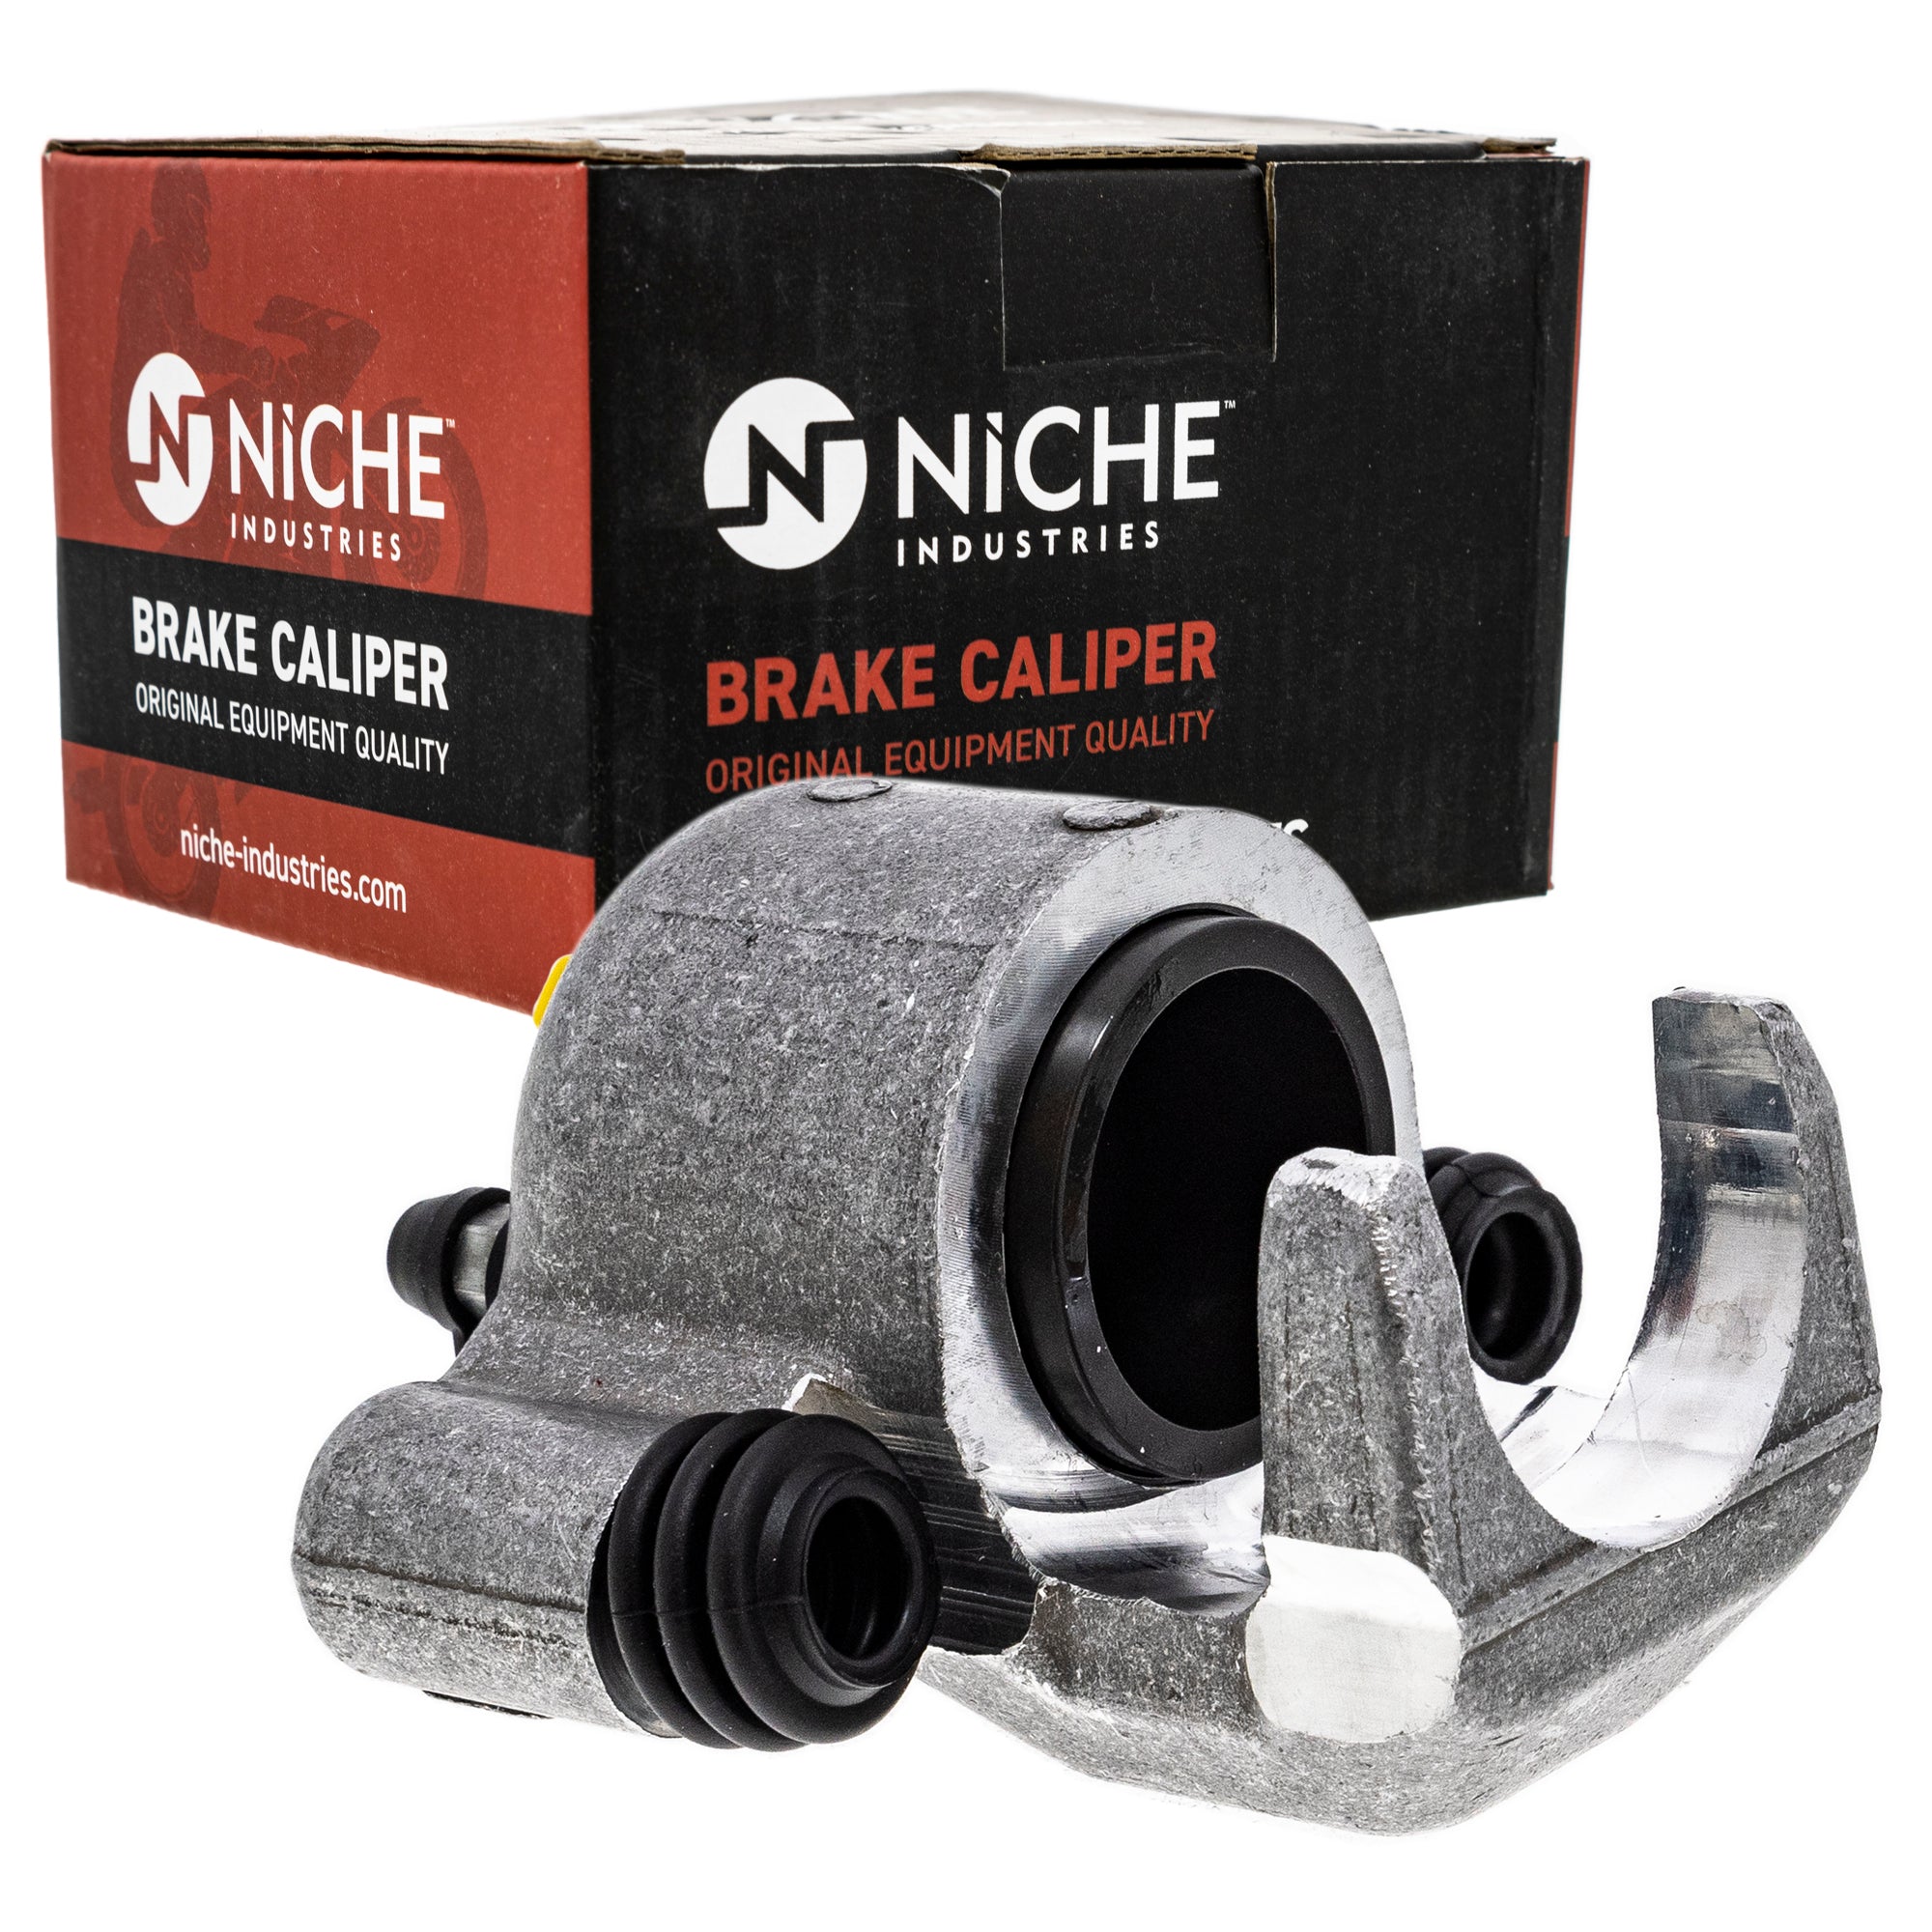 NICHE MK1001008 Brake Caliper Kit